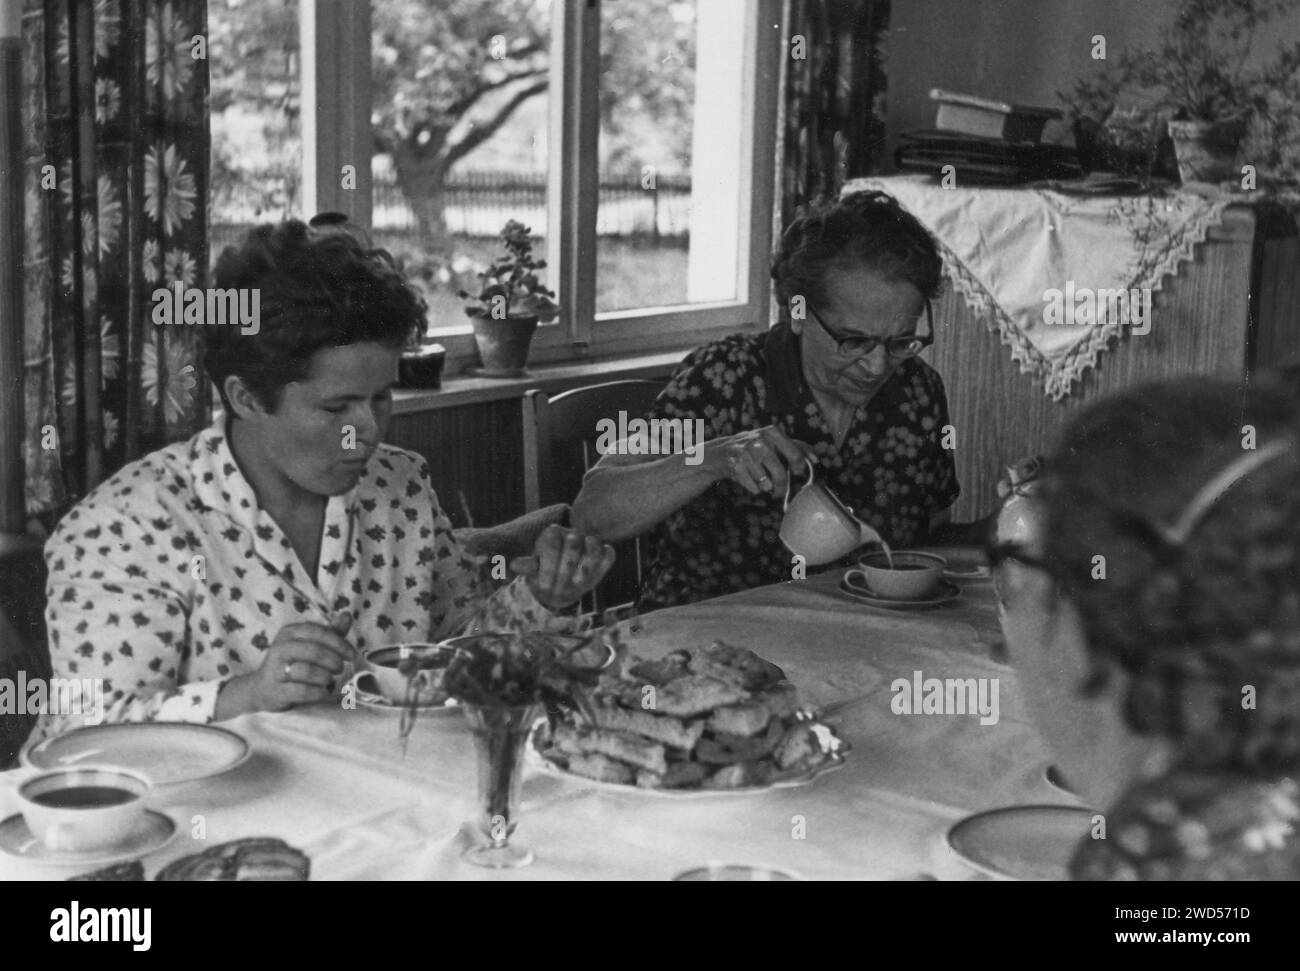 Ein antikes Foto zeigt drei Frauen, die Tee mit hausgemachten Keksen an einem Tisch im Wohnzimmer trinken. Deutschland. Datum unbekannt, um die 1950er Jahre Stockfoto